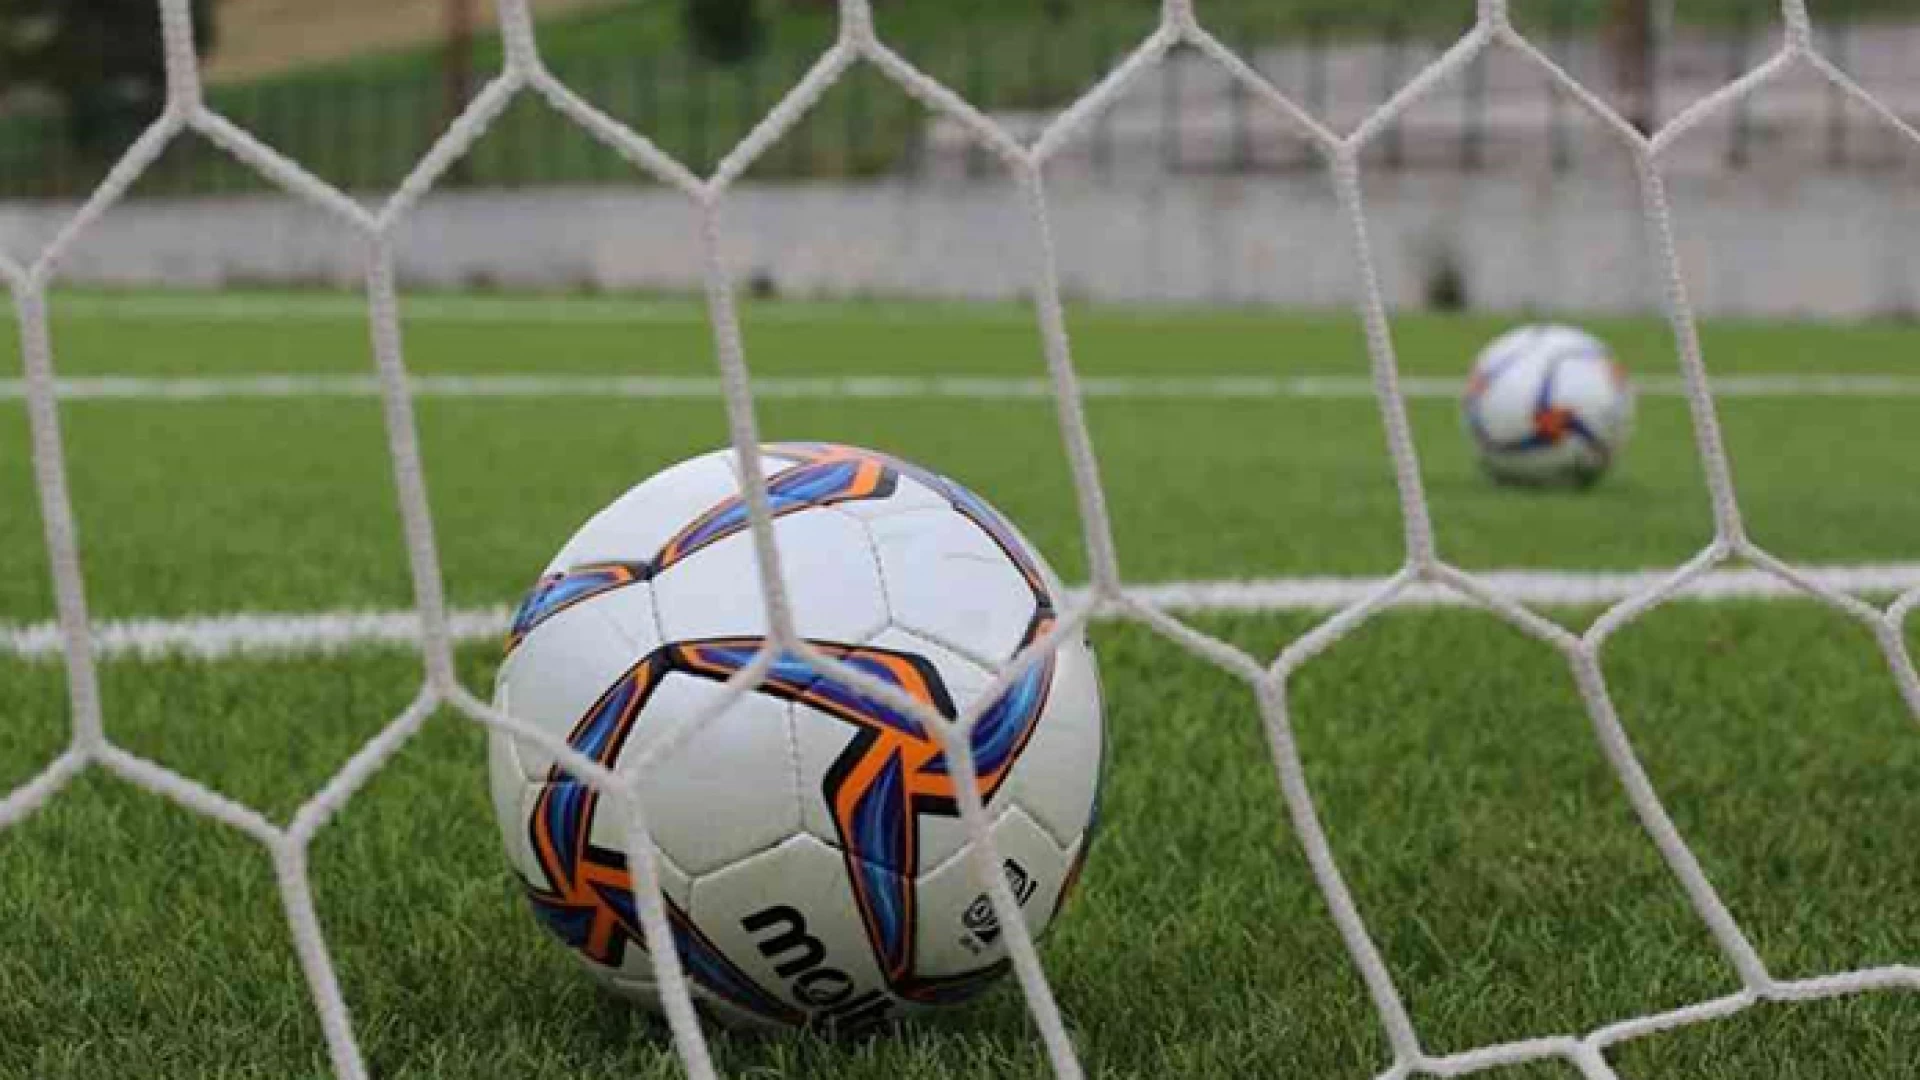 Calcio: i risultati del fine settimana in Eccellenza e Promozione nei campionati molisani